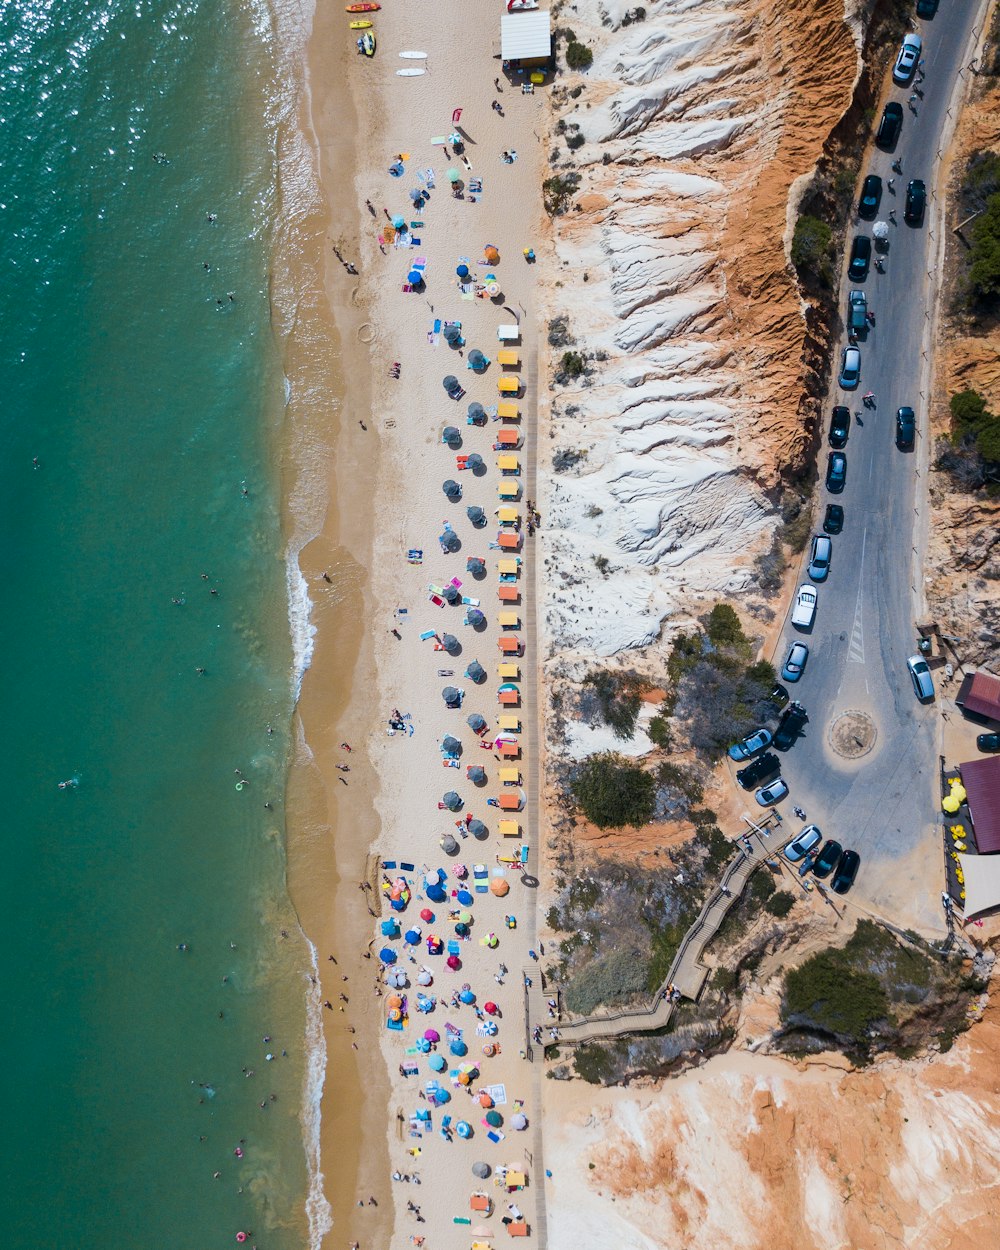 Vue aérienne de personnes sur la plage pendant la journée